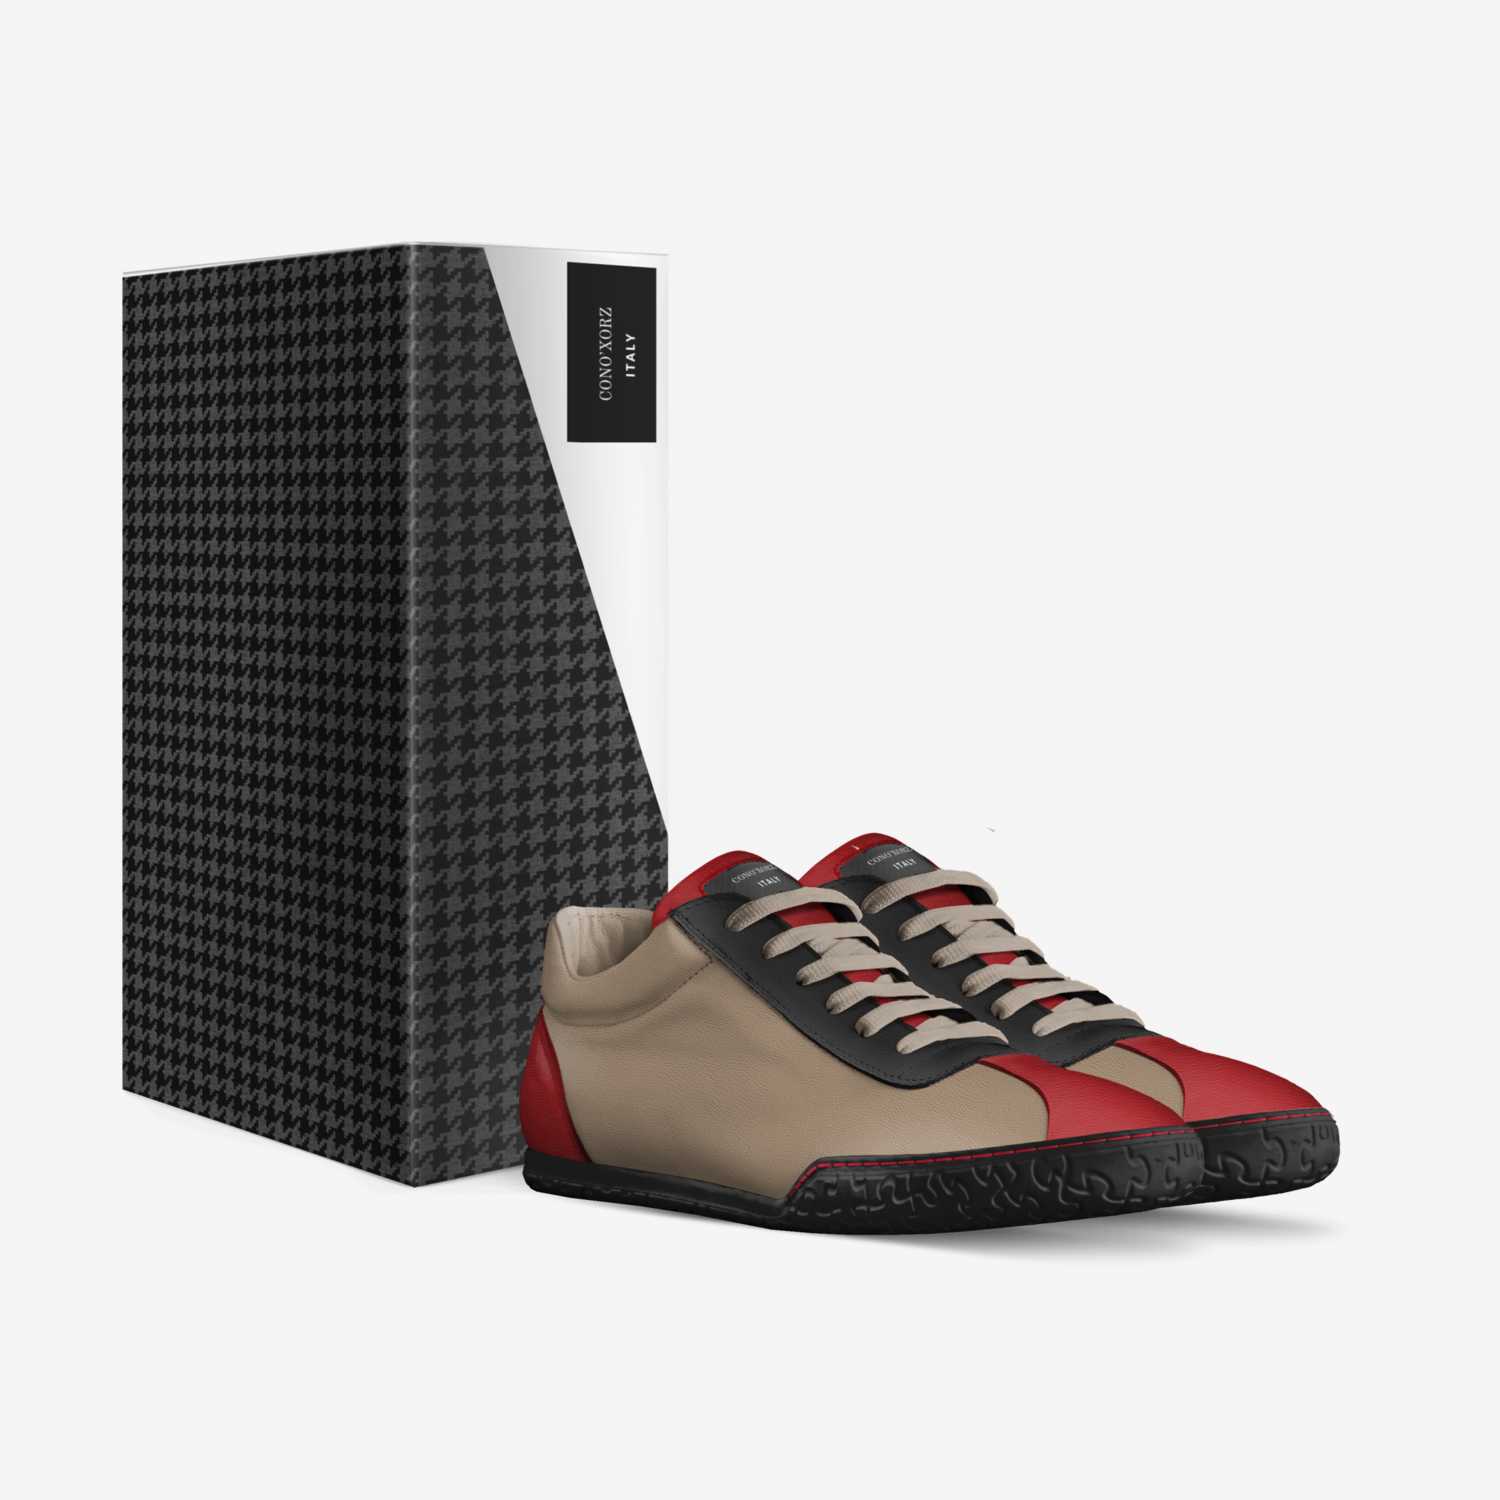 CONO'XORZ custom made in Italy shoes by Jelani Dukes | Box view